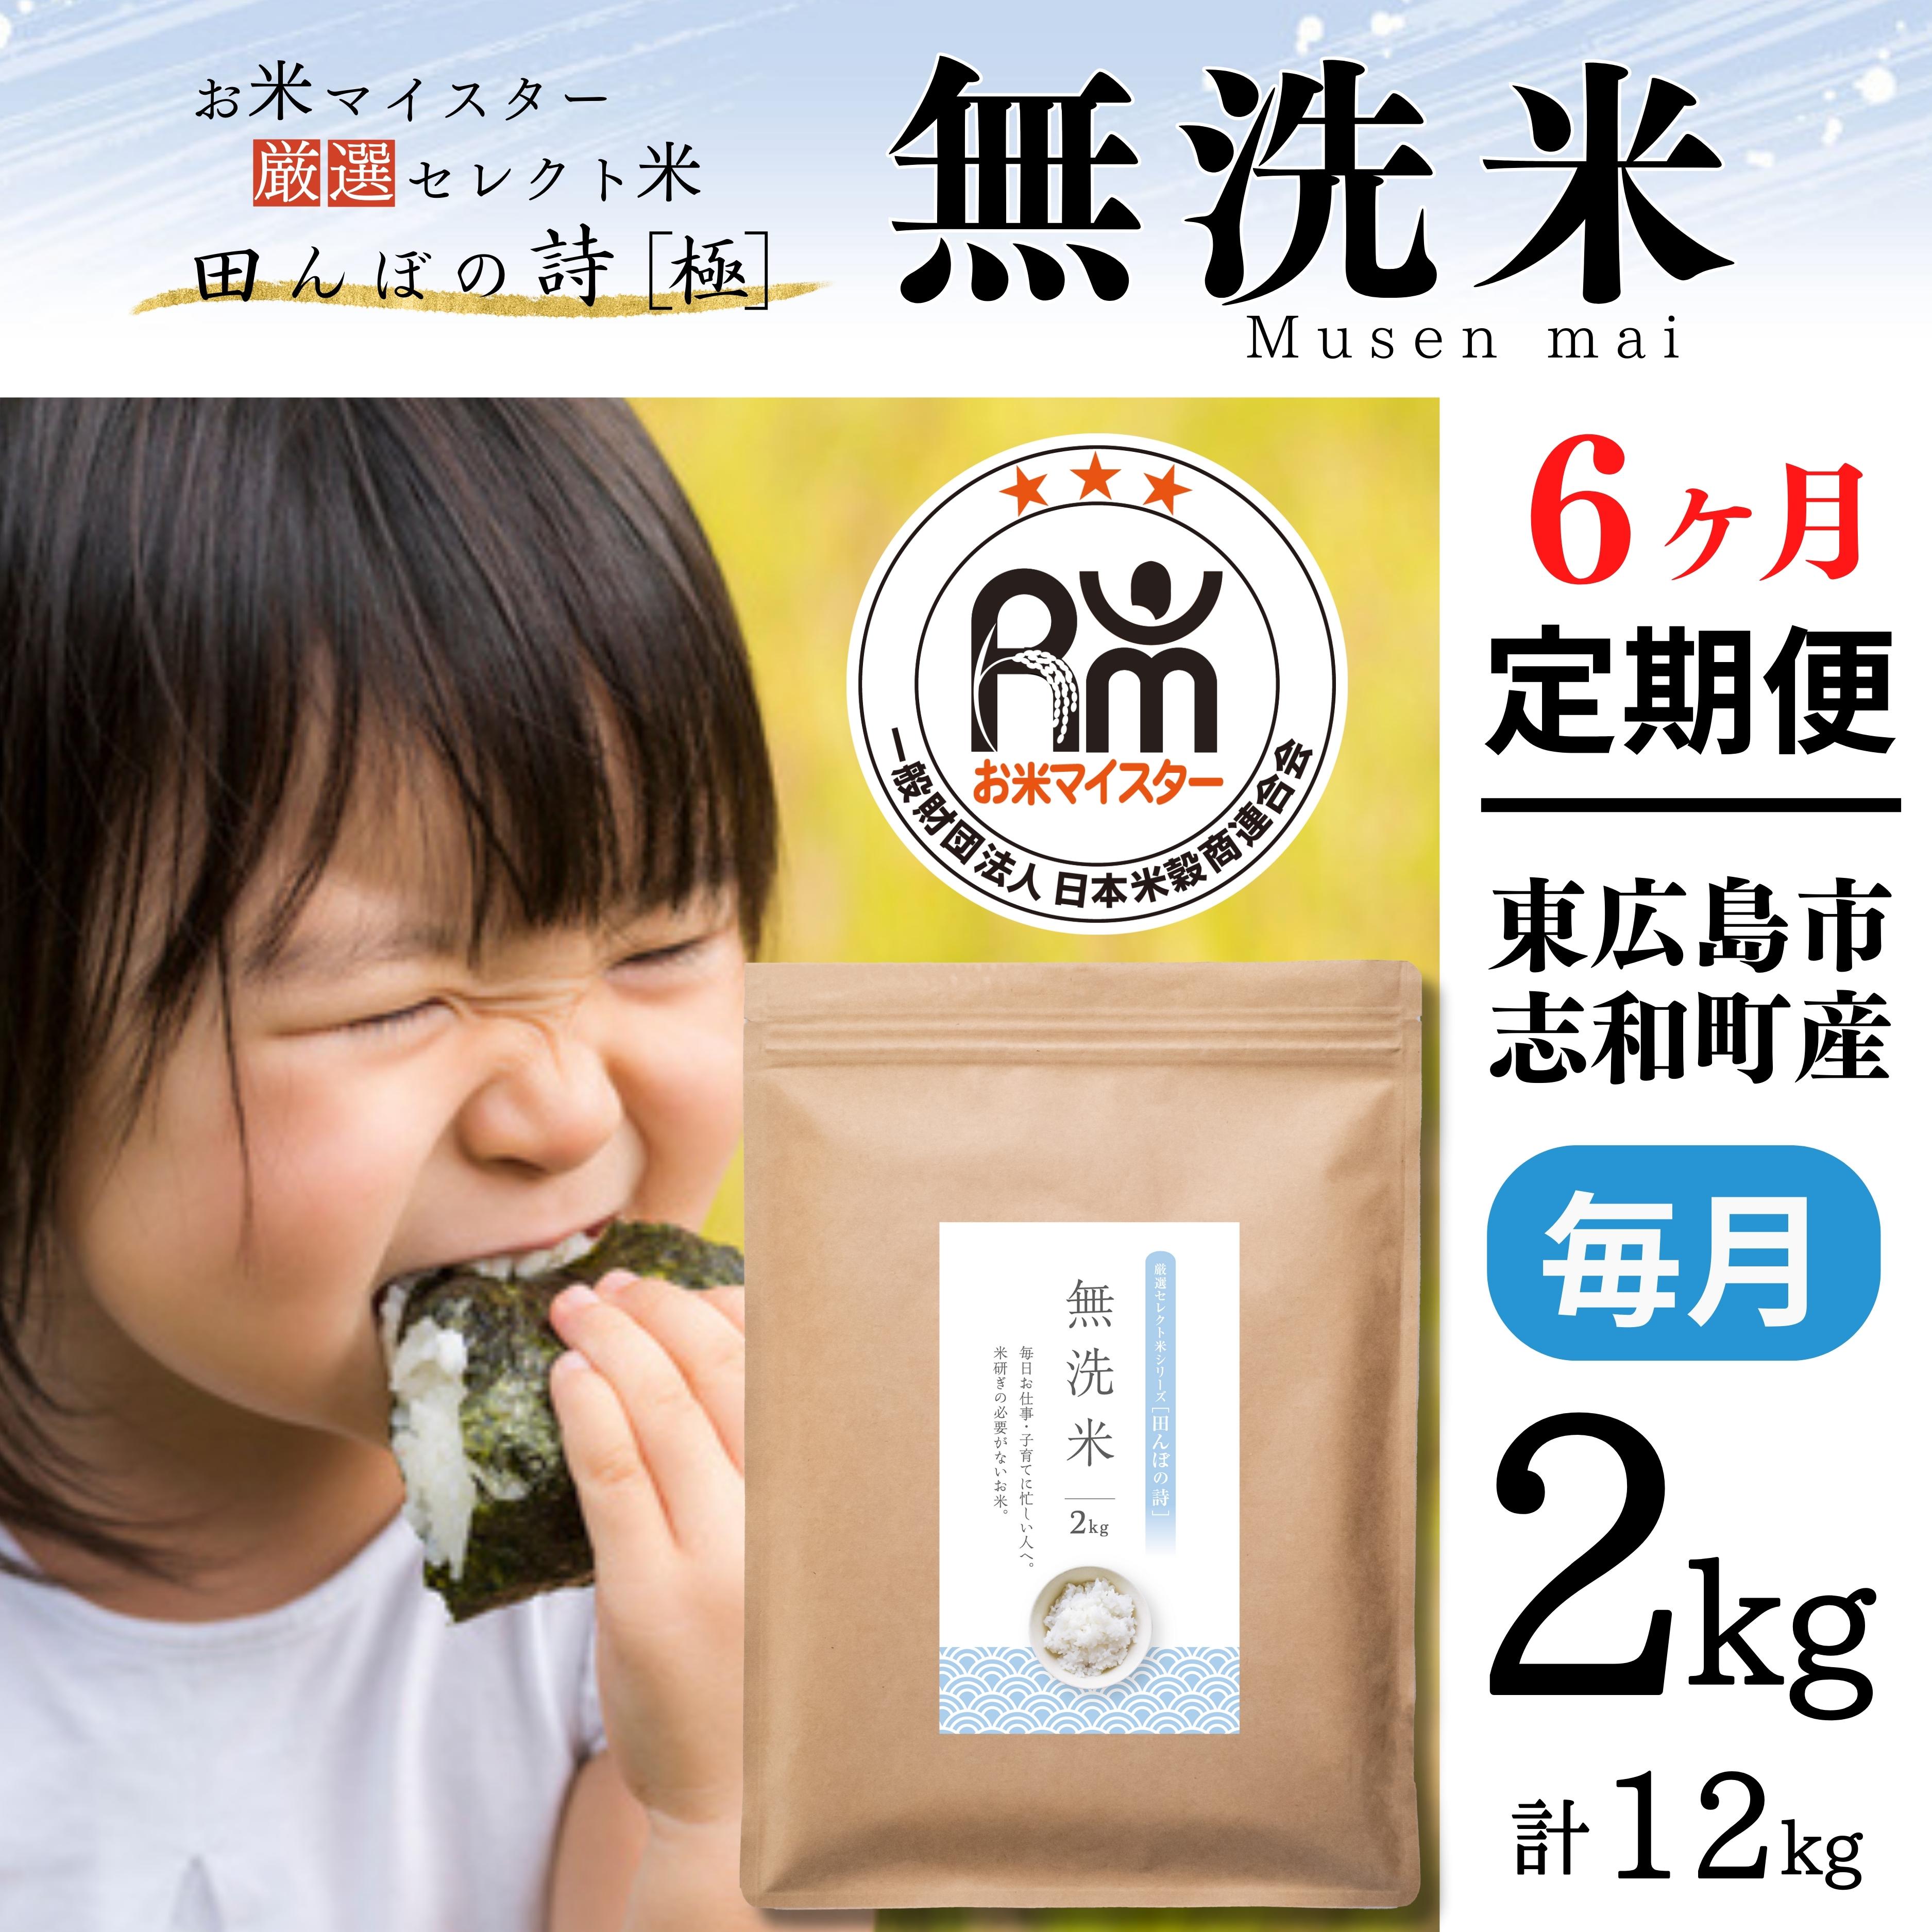 [定期便] 2kg [6ヵ月連続お届け] 計12kg 広島県産 無洗米 ラクしても美味しさそのまま お米マイスター厳選